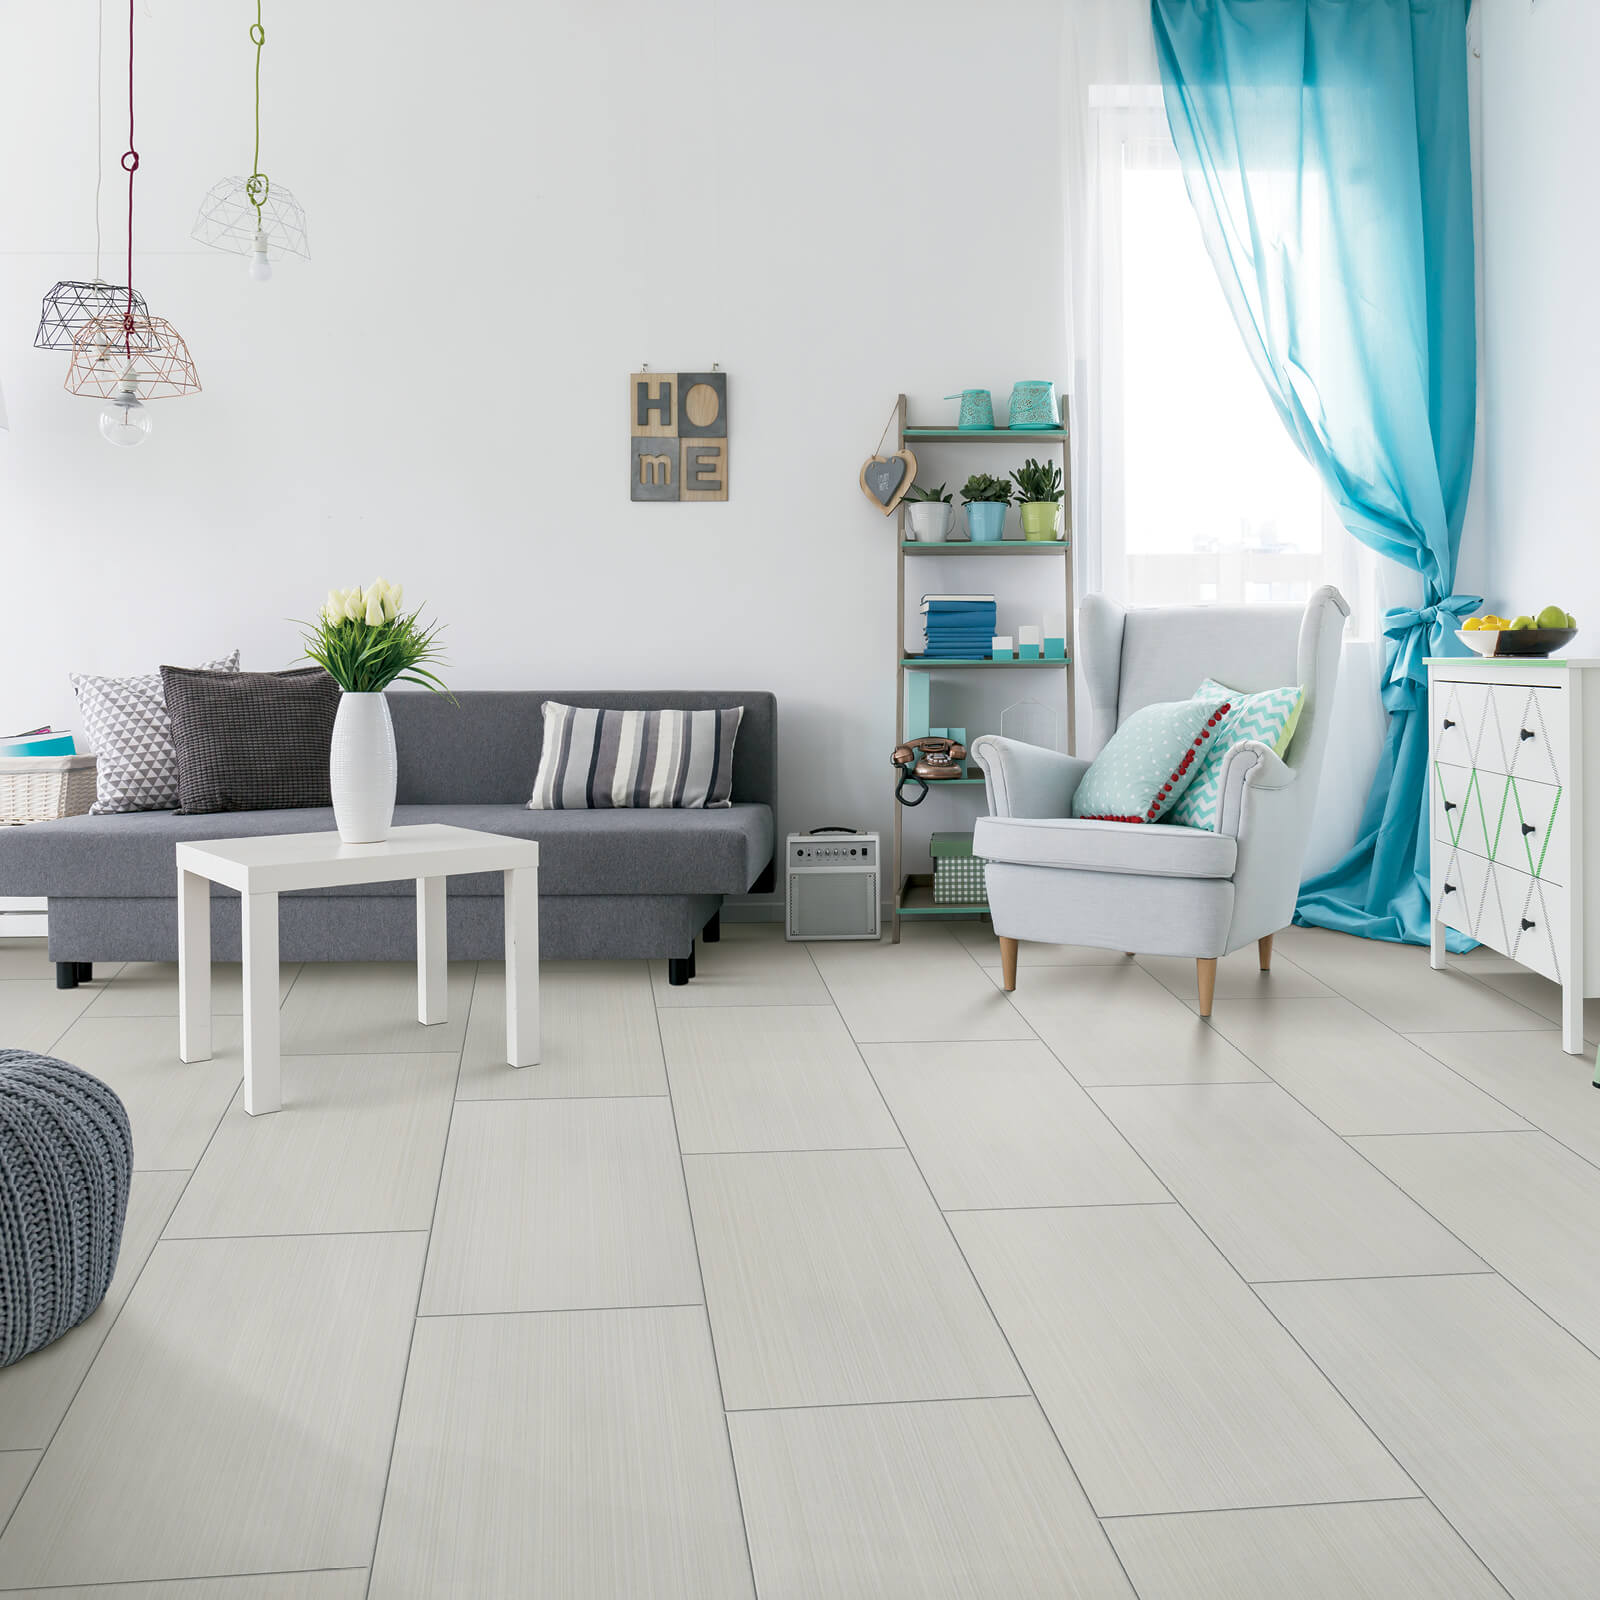 Tile flooring for living room | York Carpetland USA 